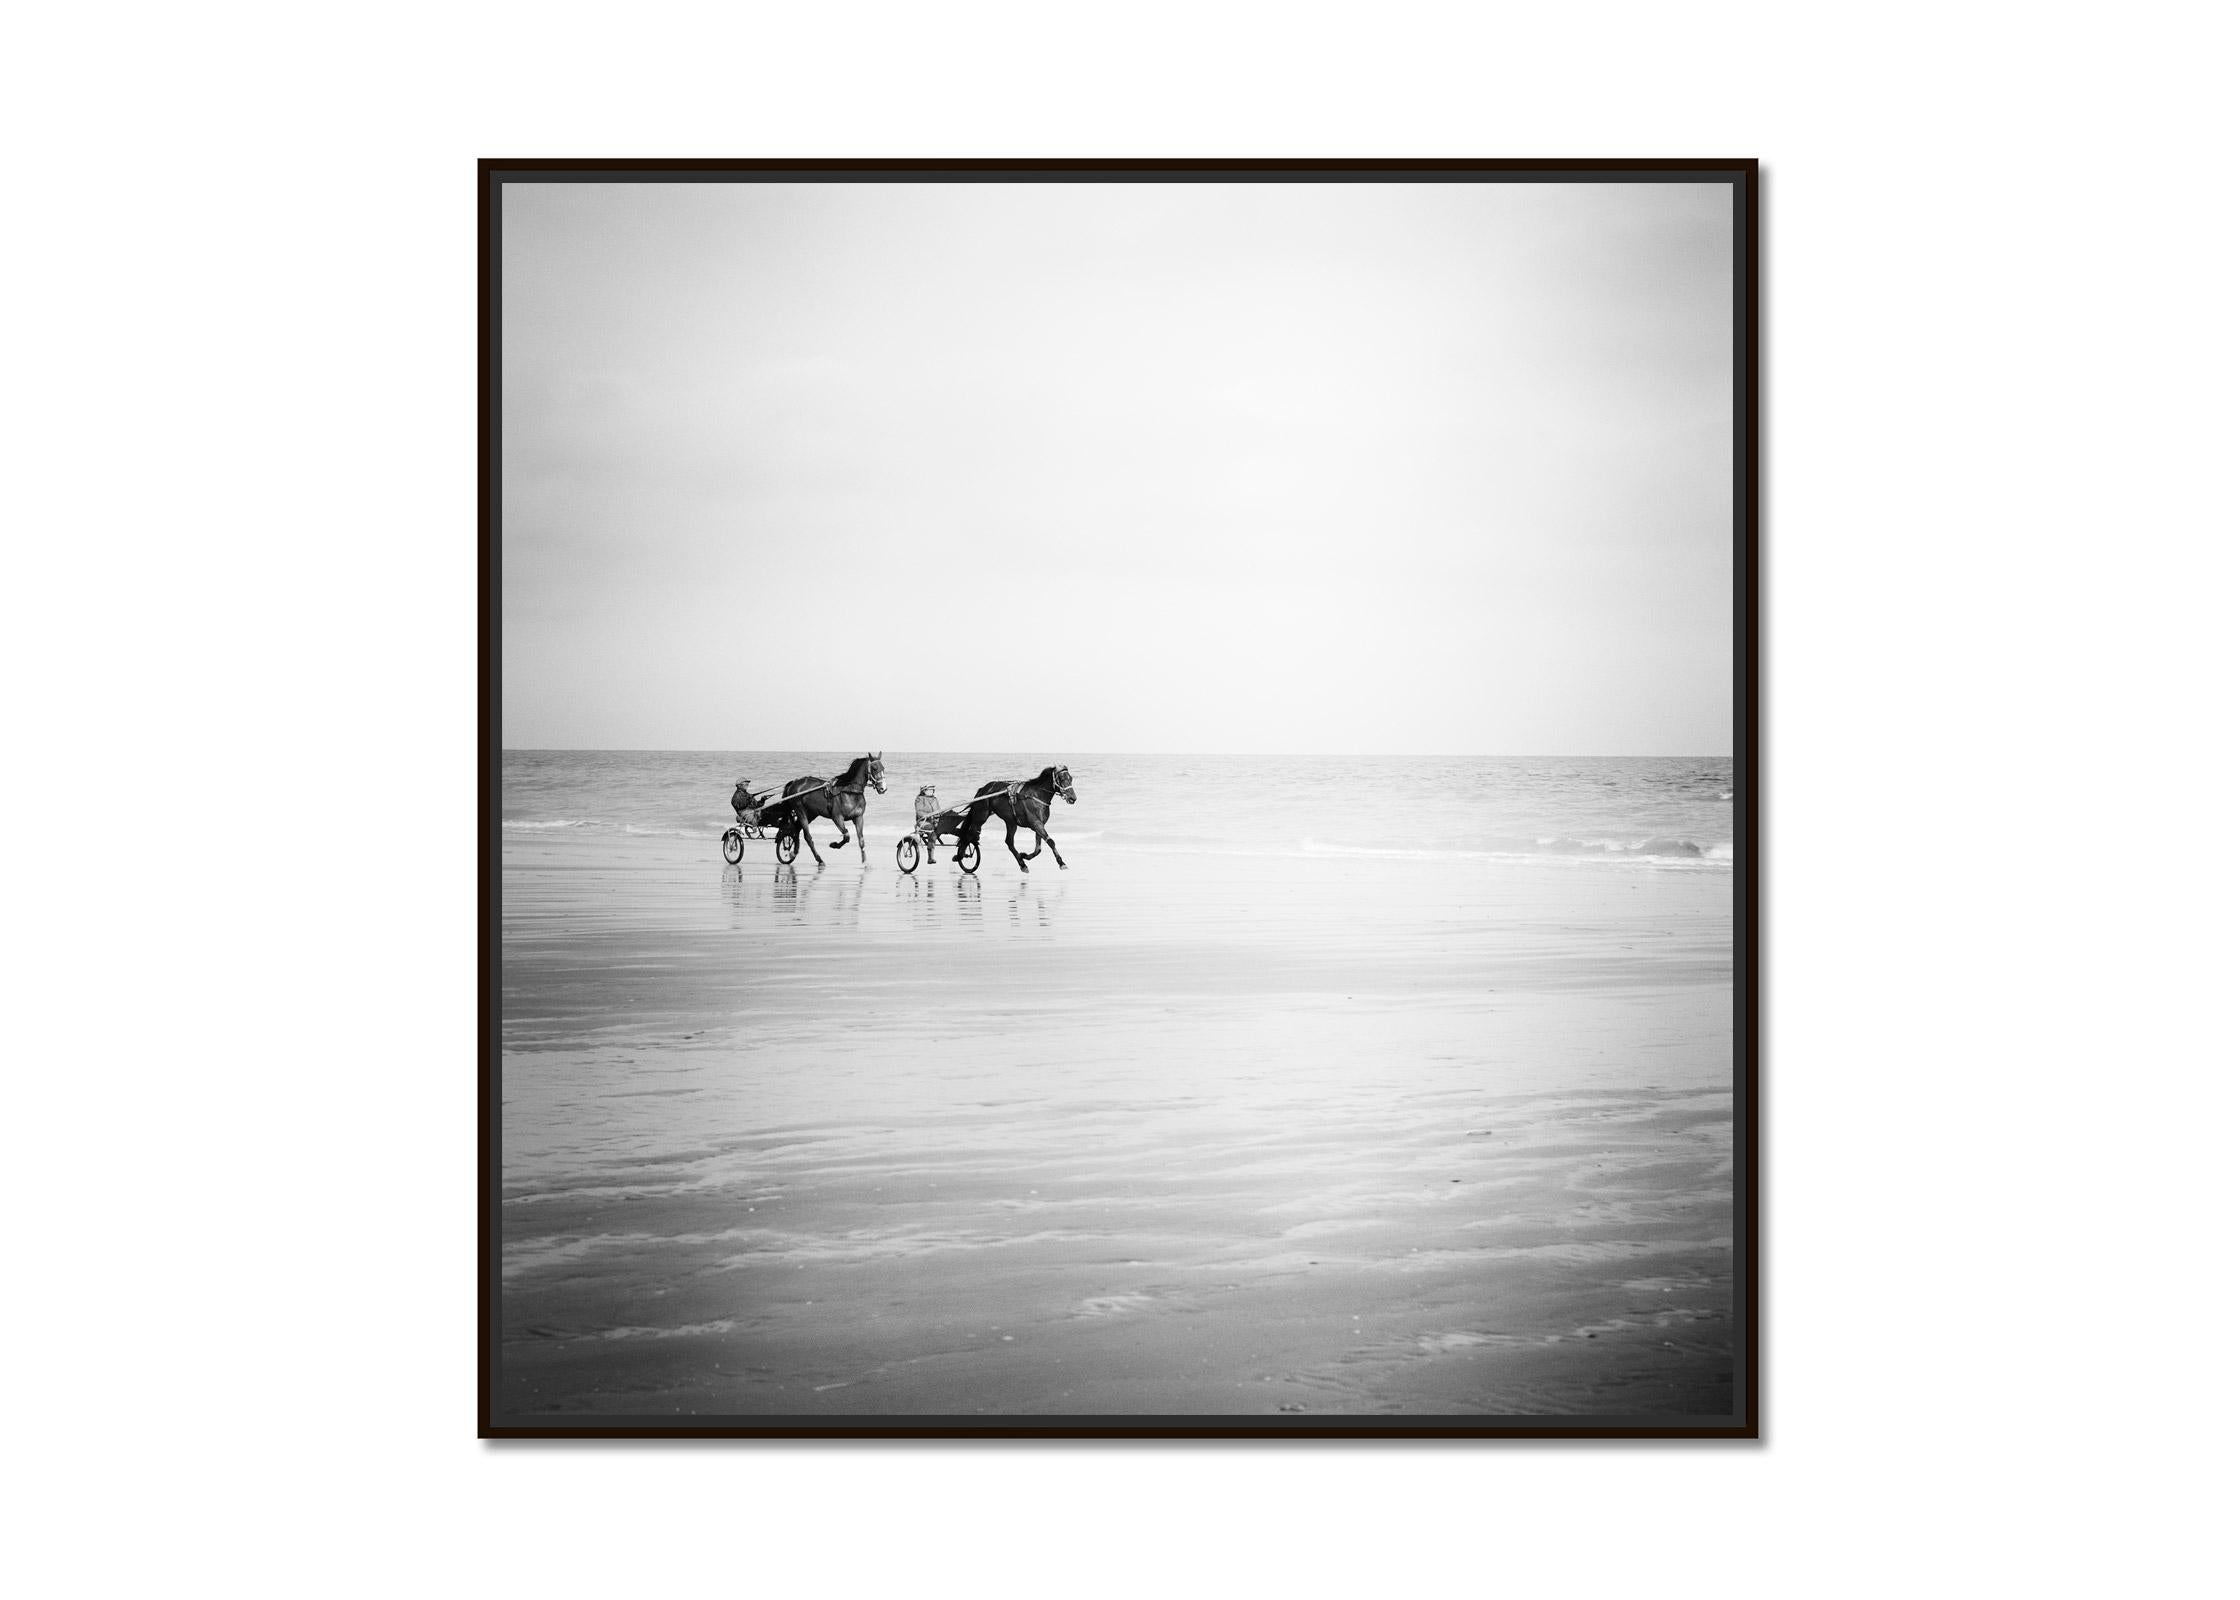 Harness Racing, Pferde am Strand, Frankreich, Schwarz-Weiß-Landschaftsfotografie – Photograph von Gerald Berghammer